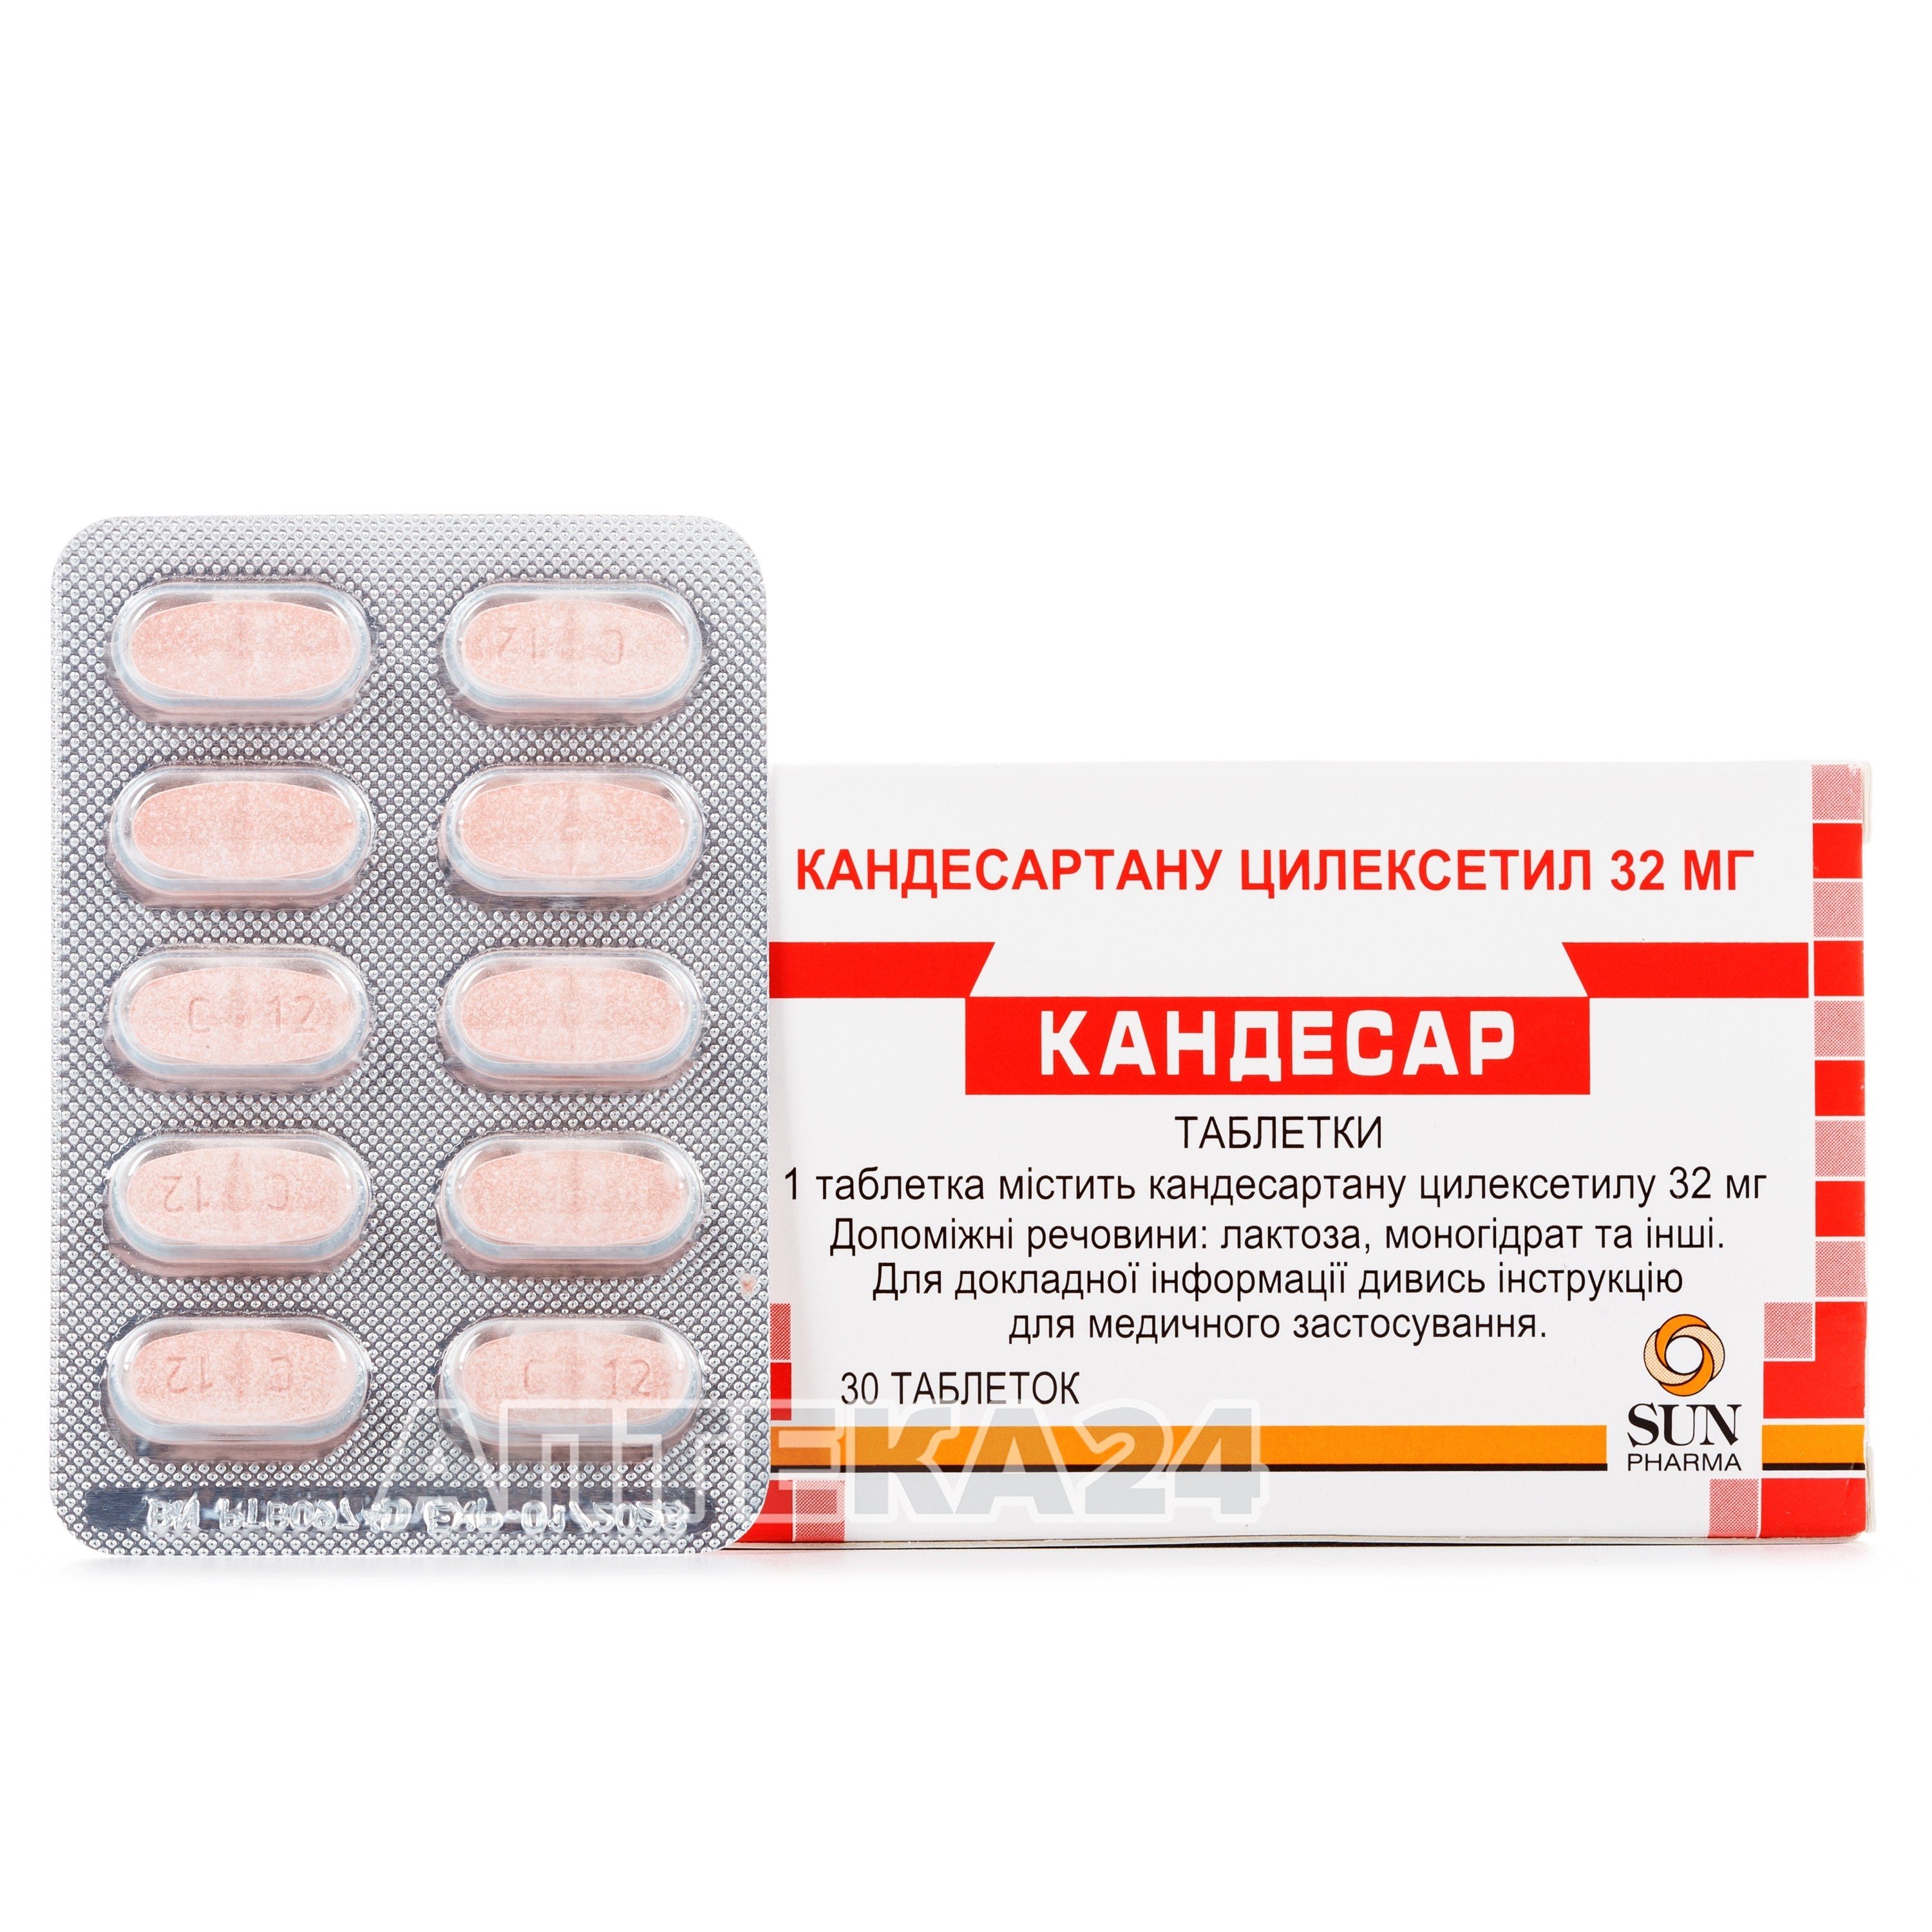 Кандесар таблетки по 32 мг, 30 шт.: инструкция, цена, отзывы, аналоги .